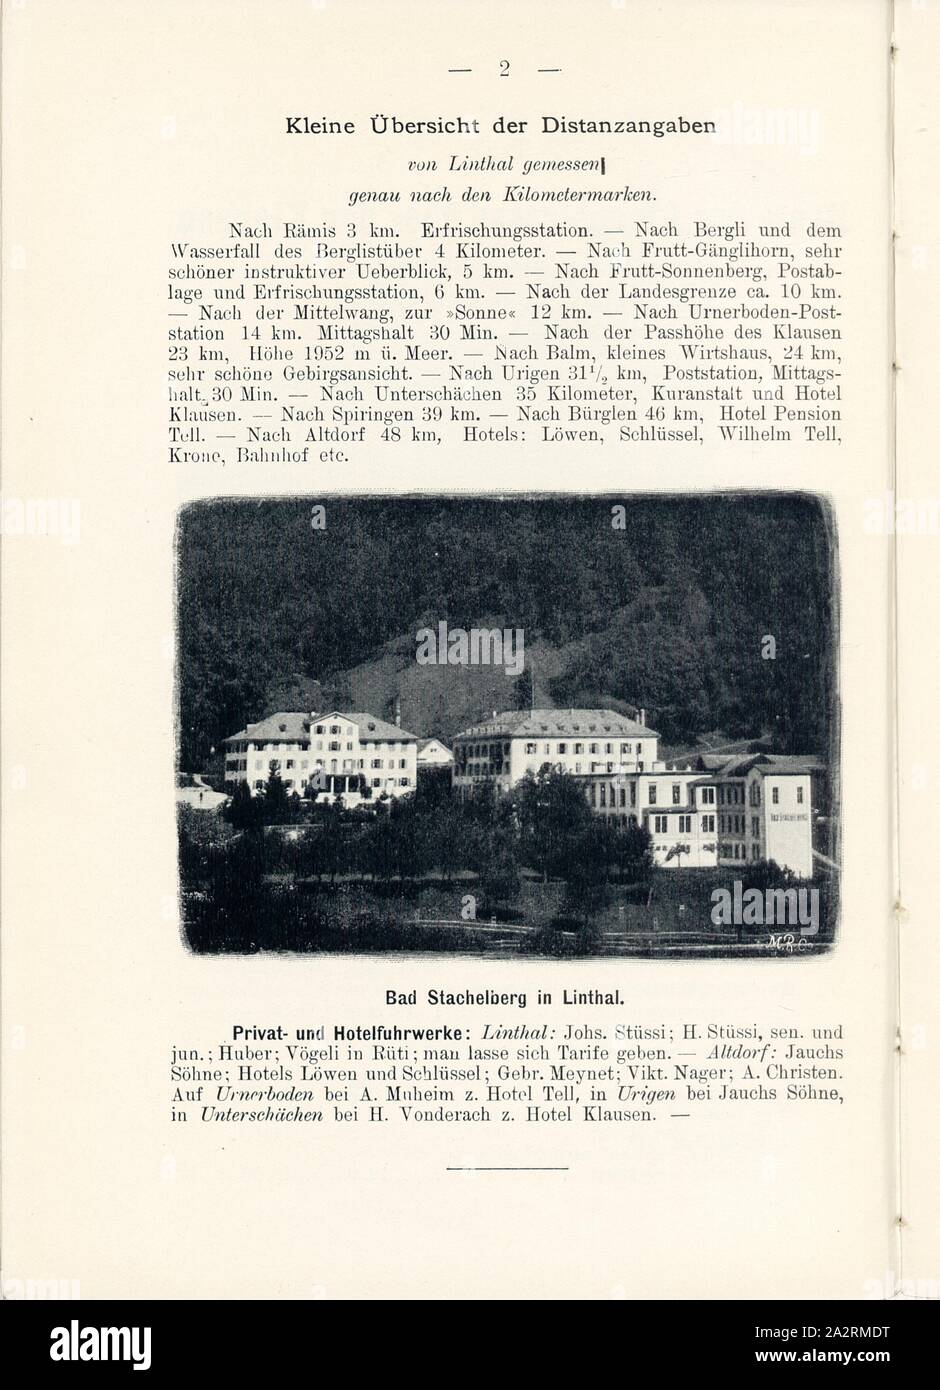 Bad Stachelberg in Linthal, Bad Stachelberg in the Canton of Glarus, Signed: M.R.C, Fig. 2, p. 2, Meisenbach, Riffarth und Co. (imp.), 1900, J. Knobel: Illustrierter Reisebegleiter für die Alpenstrasse des Klausen und ihre Zufahrtslinien. Glarus: Buchdruckerei J. Spälti, 1900 Stock Photo